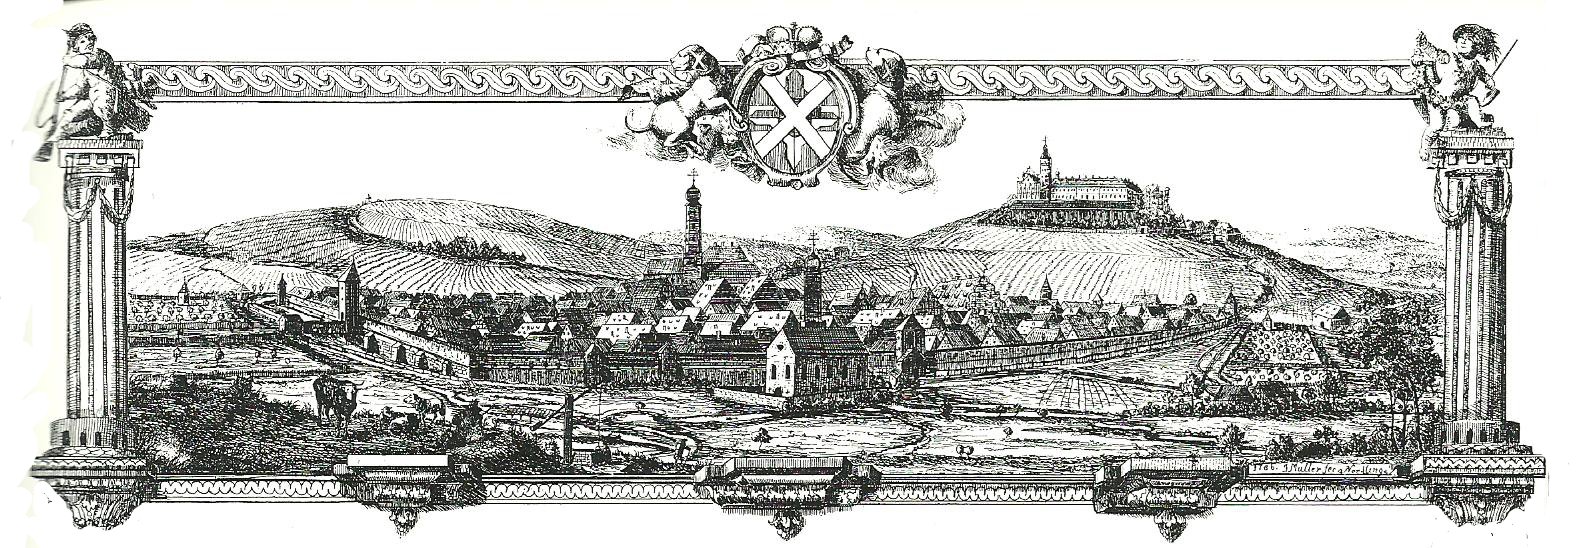 Mittelalterliches Neresheim